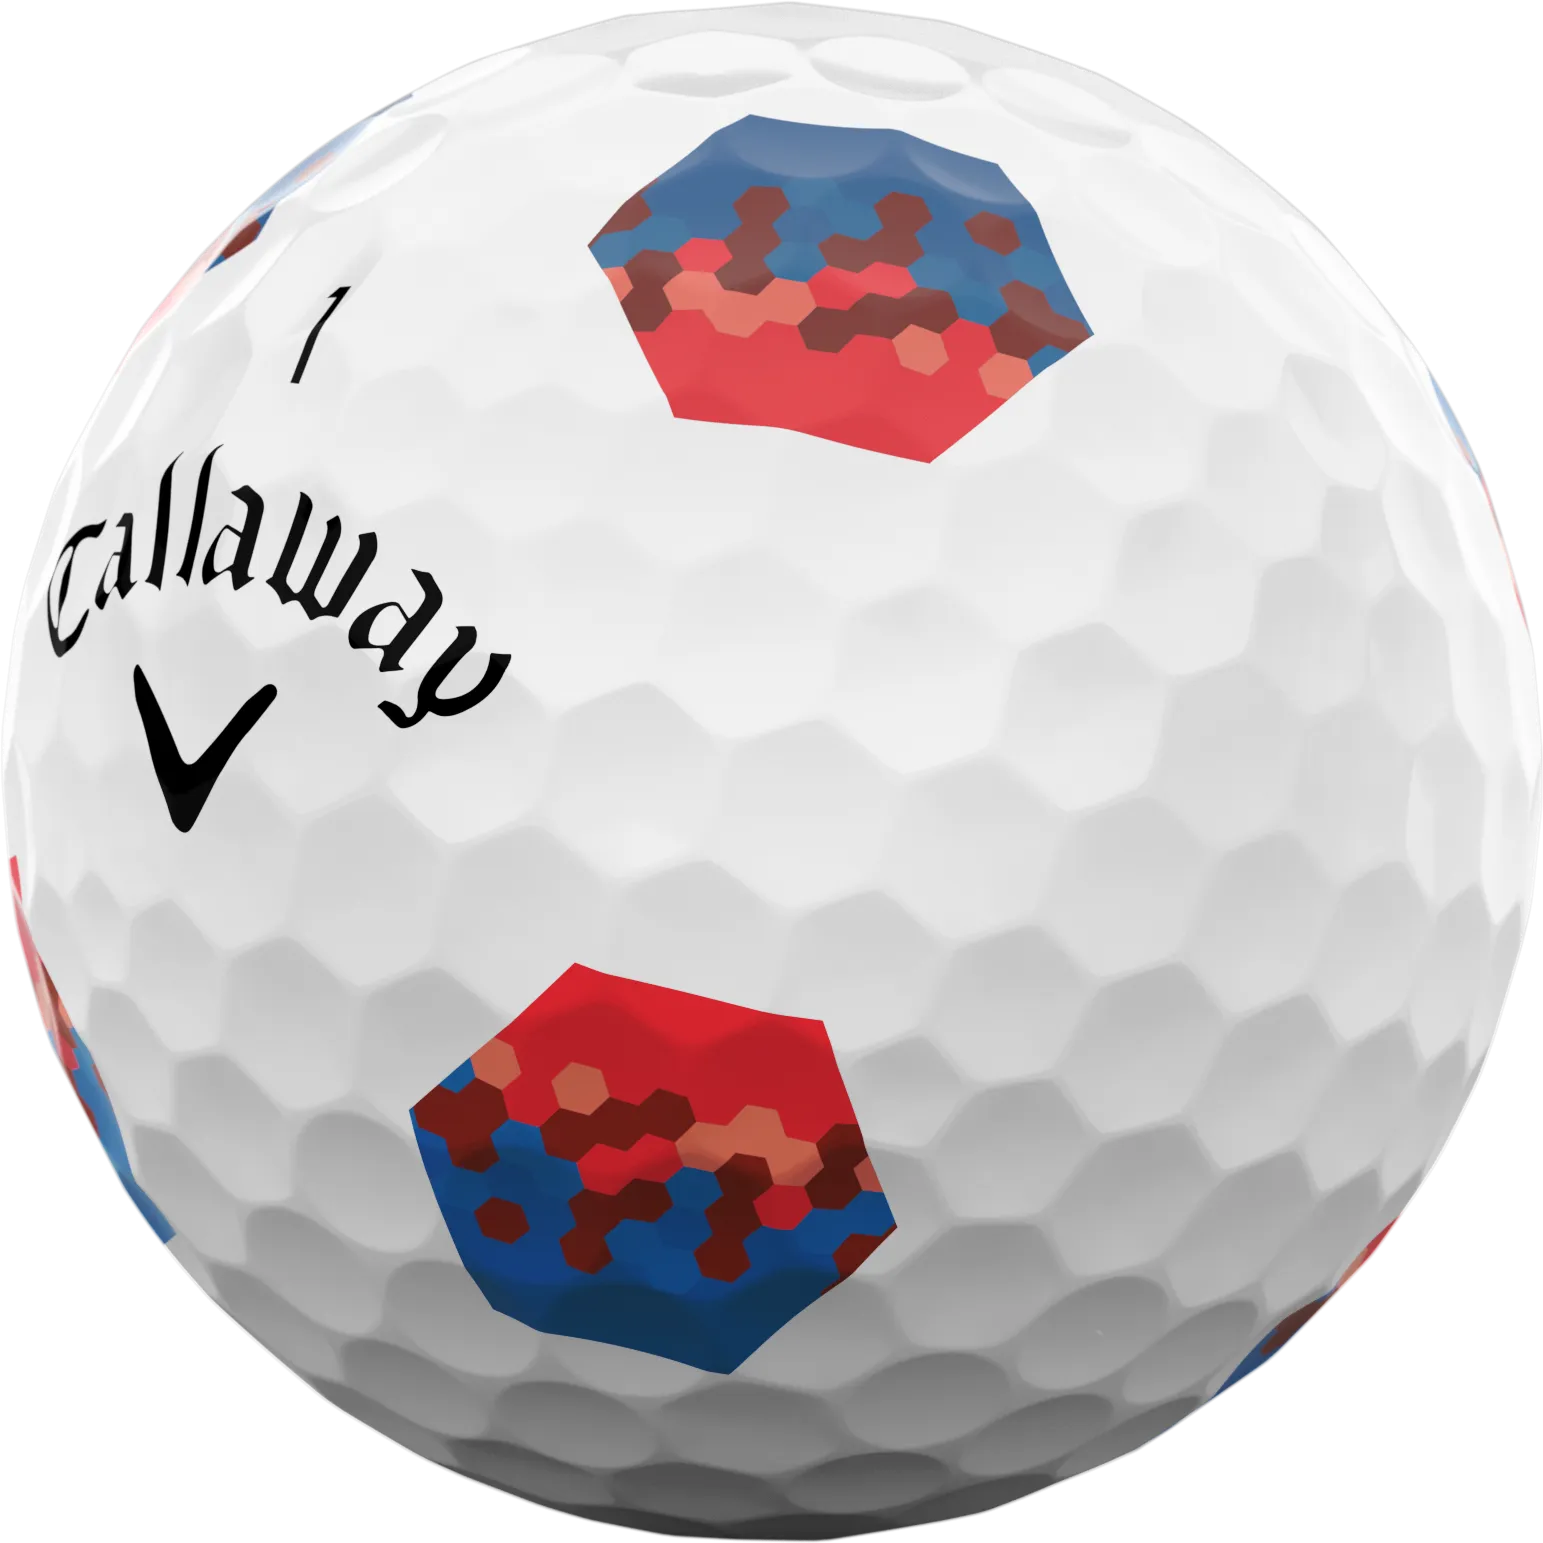 Callaway Chrome Soft TruTrack Golfbälle, weiß